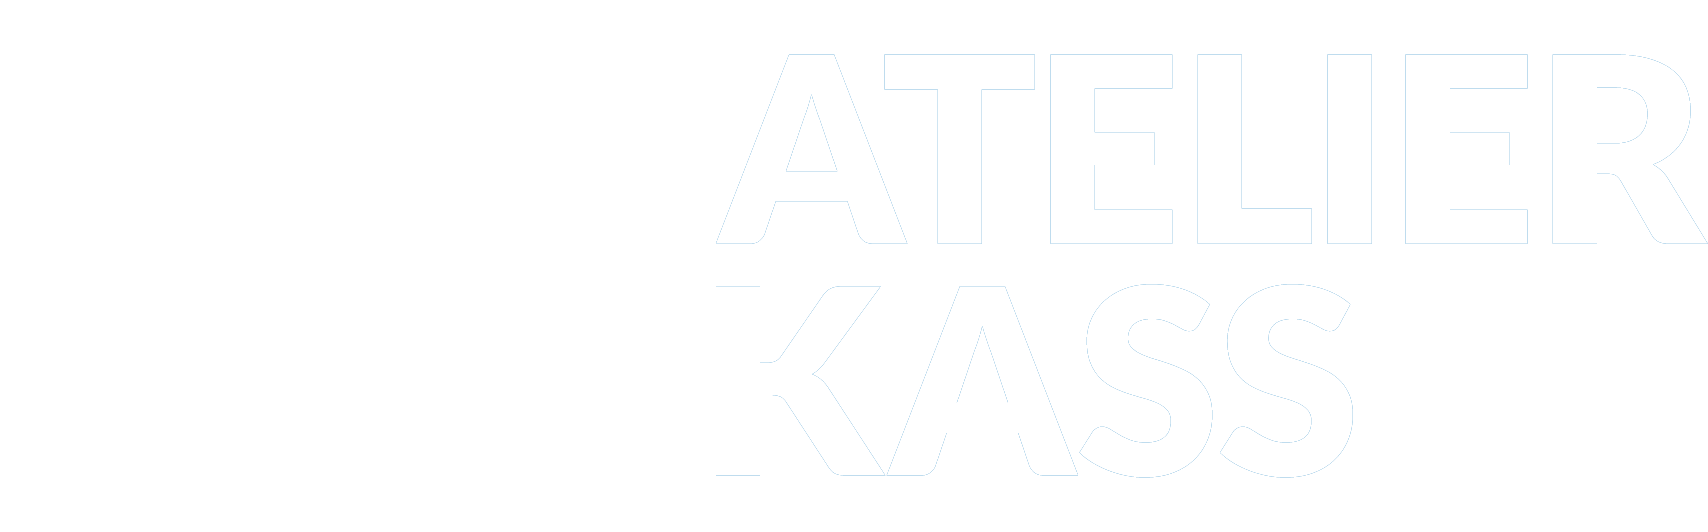 Atelier-Kass-Schmadd-Aarbechten-Bous-Metallveraarbechtung-Logo-white